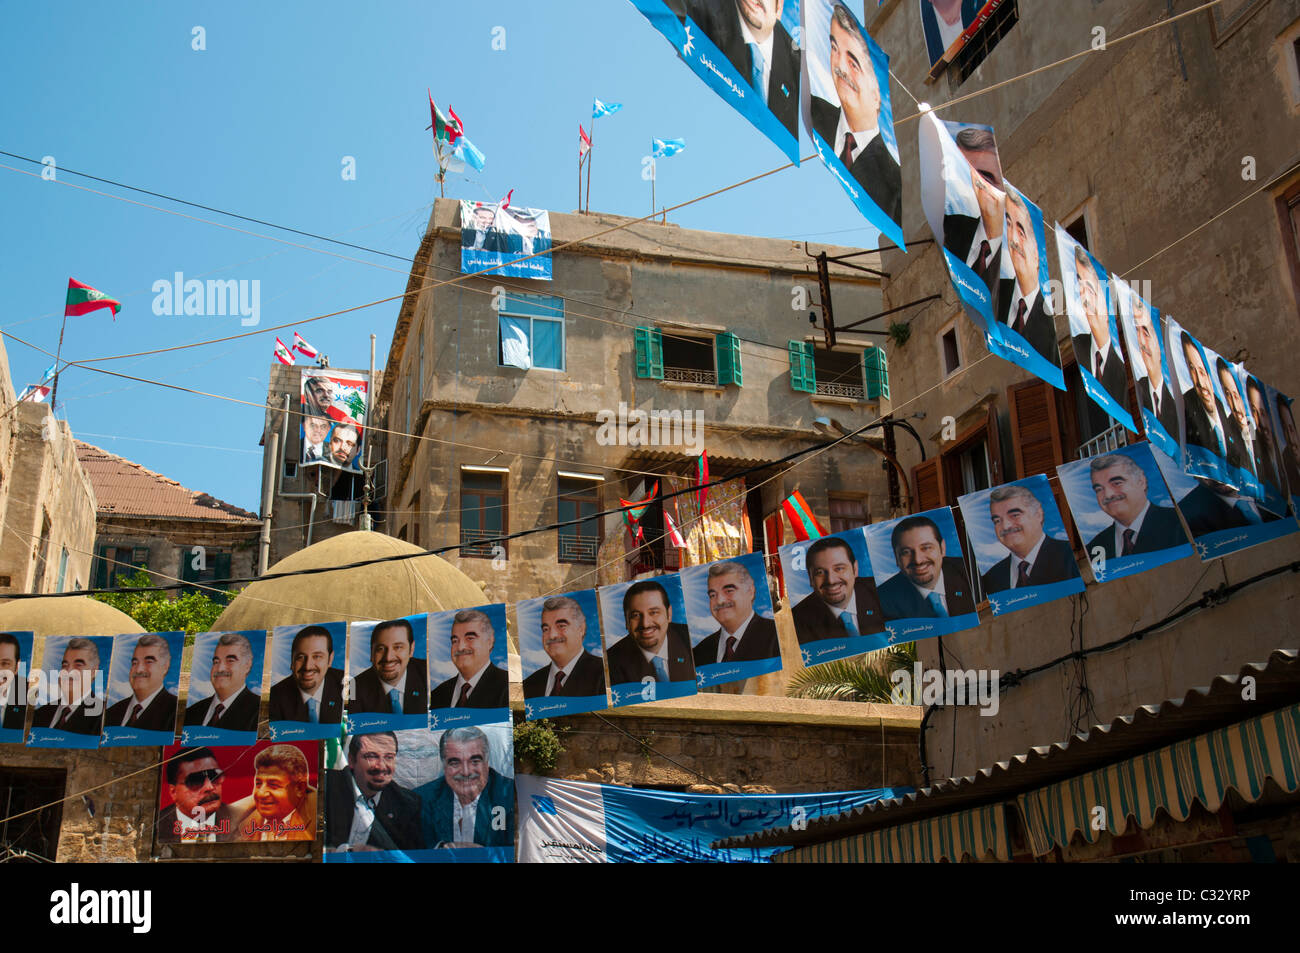 Poster von Rafik Hariri ehemaliger Ministerpräsident des Libanon, Assasined und sein Sohn Saad Hariri war. Sidon (Saida). Libanon. Stockfoto